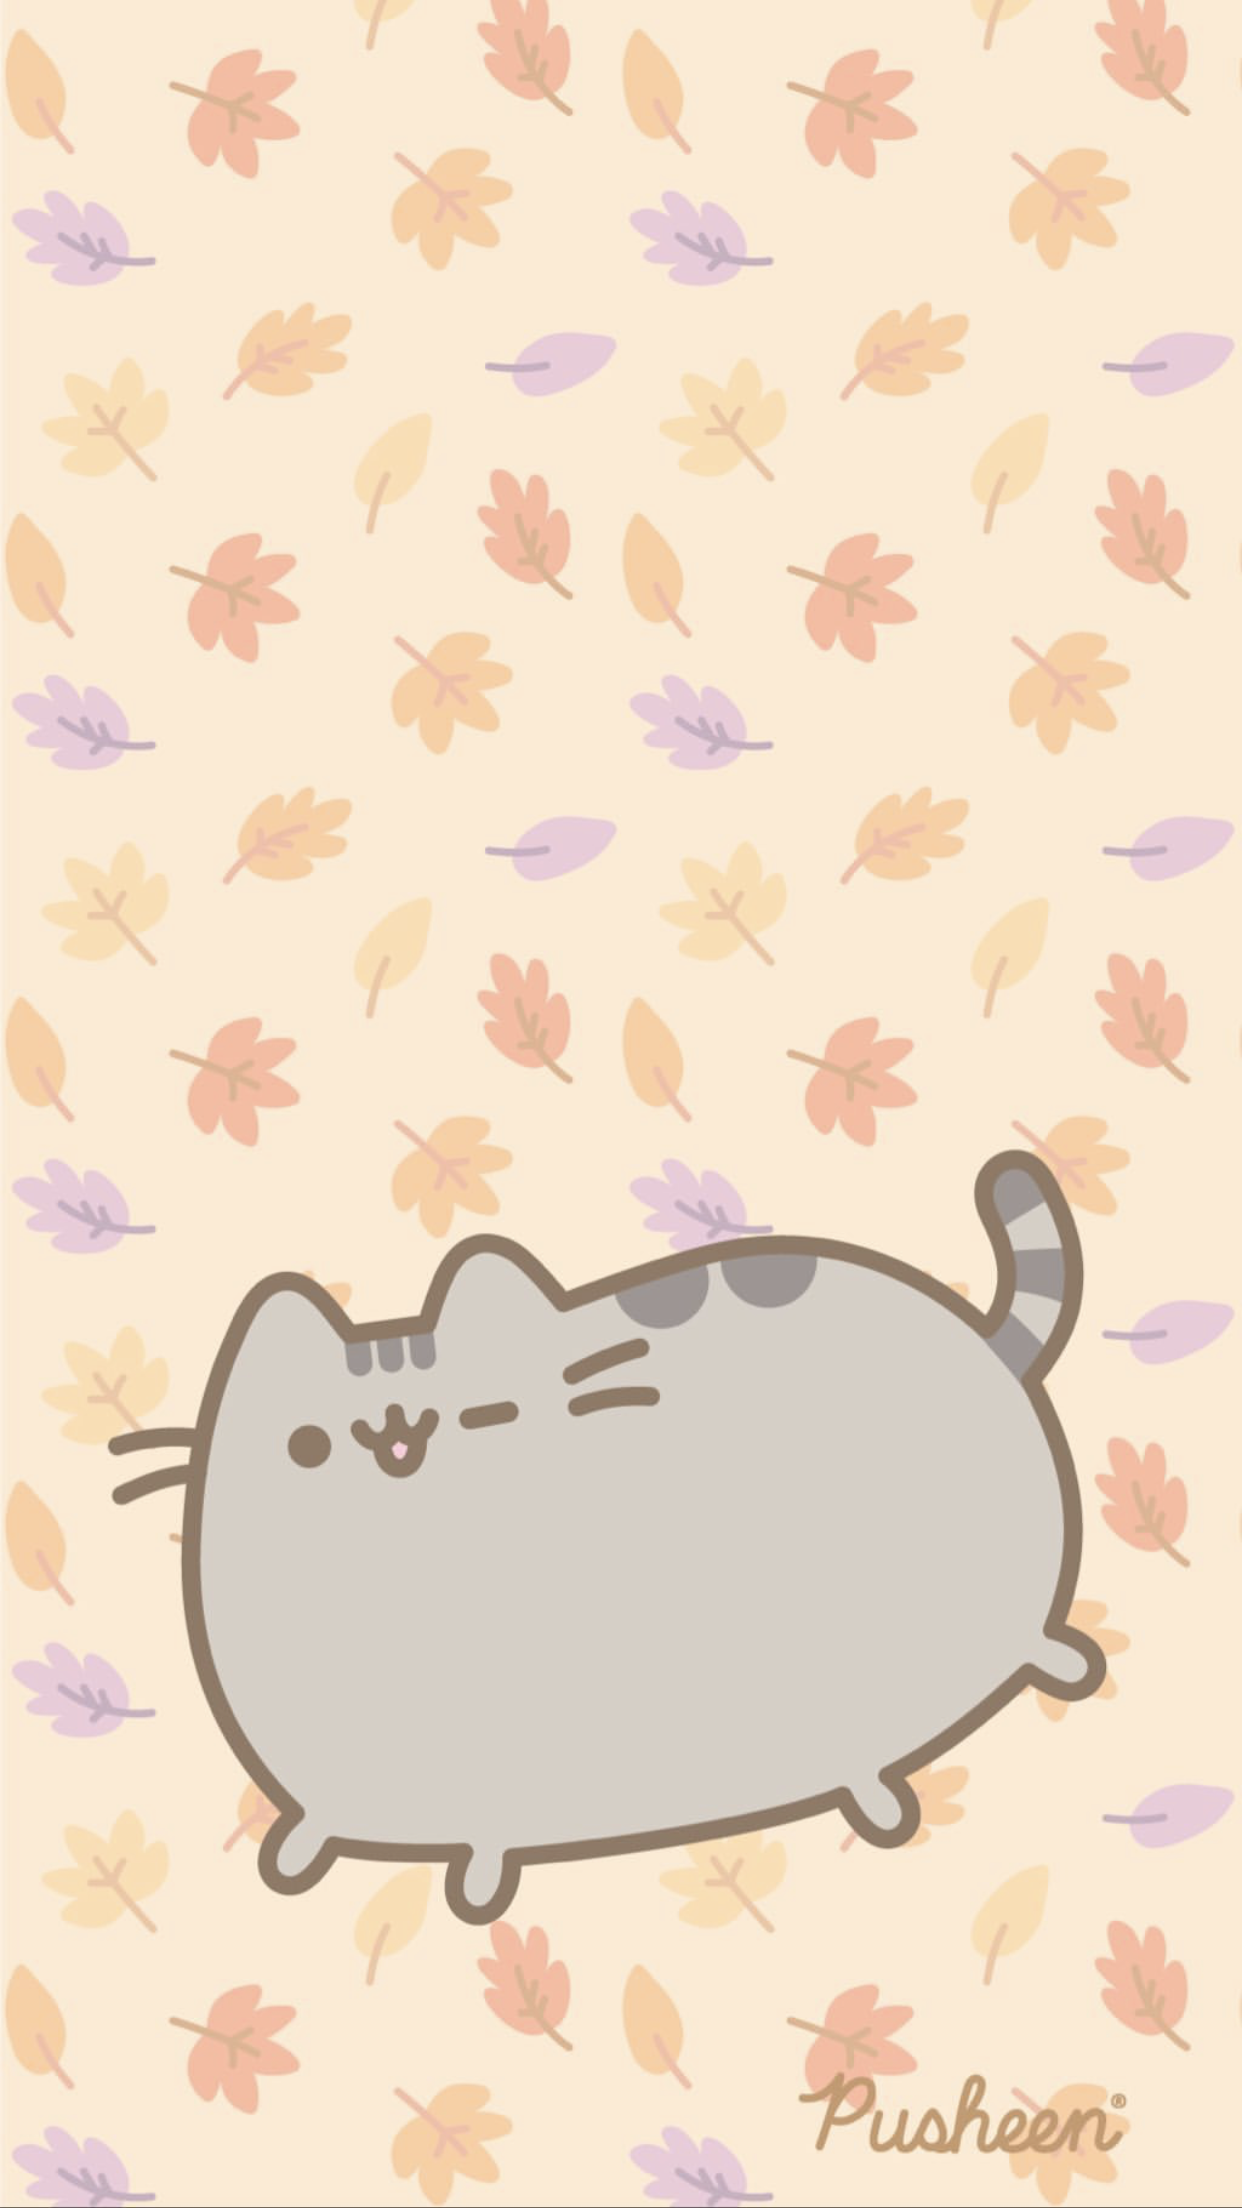 Pusheen the cat iphone wallpaper autumn pusheen cat pusheen pusheen cute